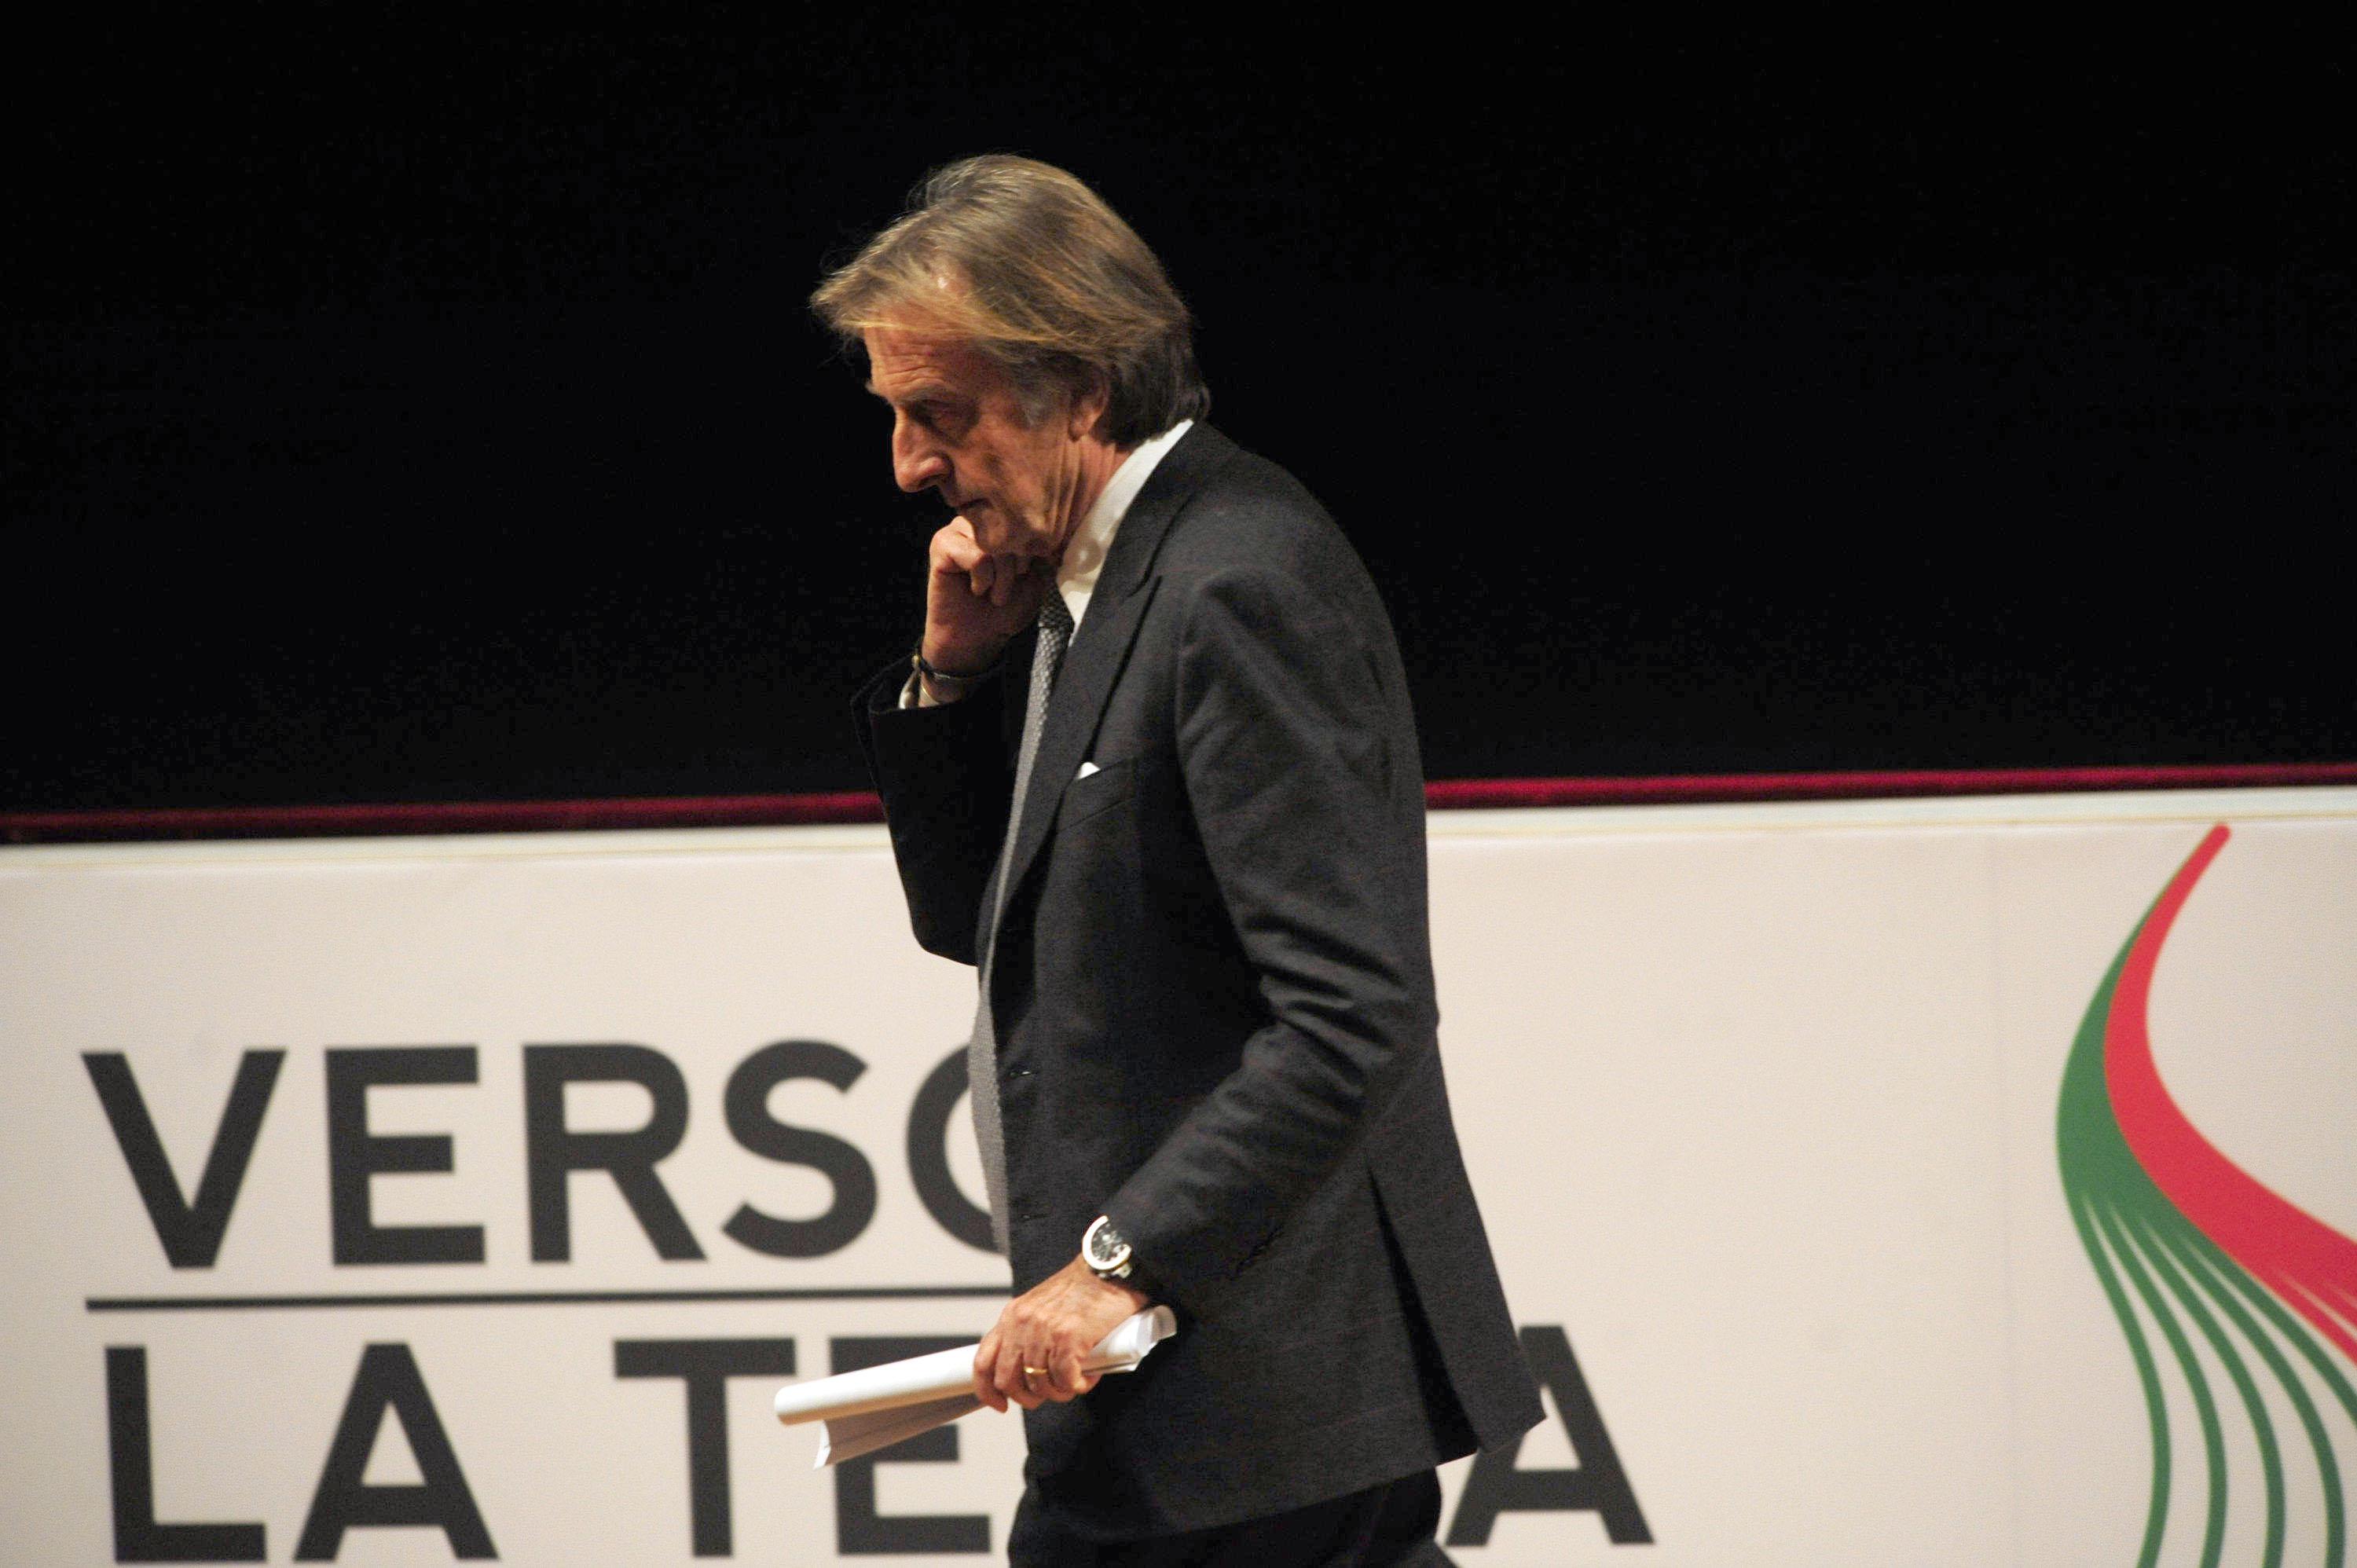 Convention Italia Futura 'Verso la Terza repubblica' (2012 - Foto Infophoto)